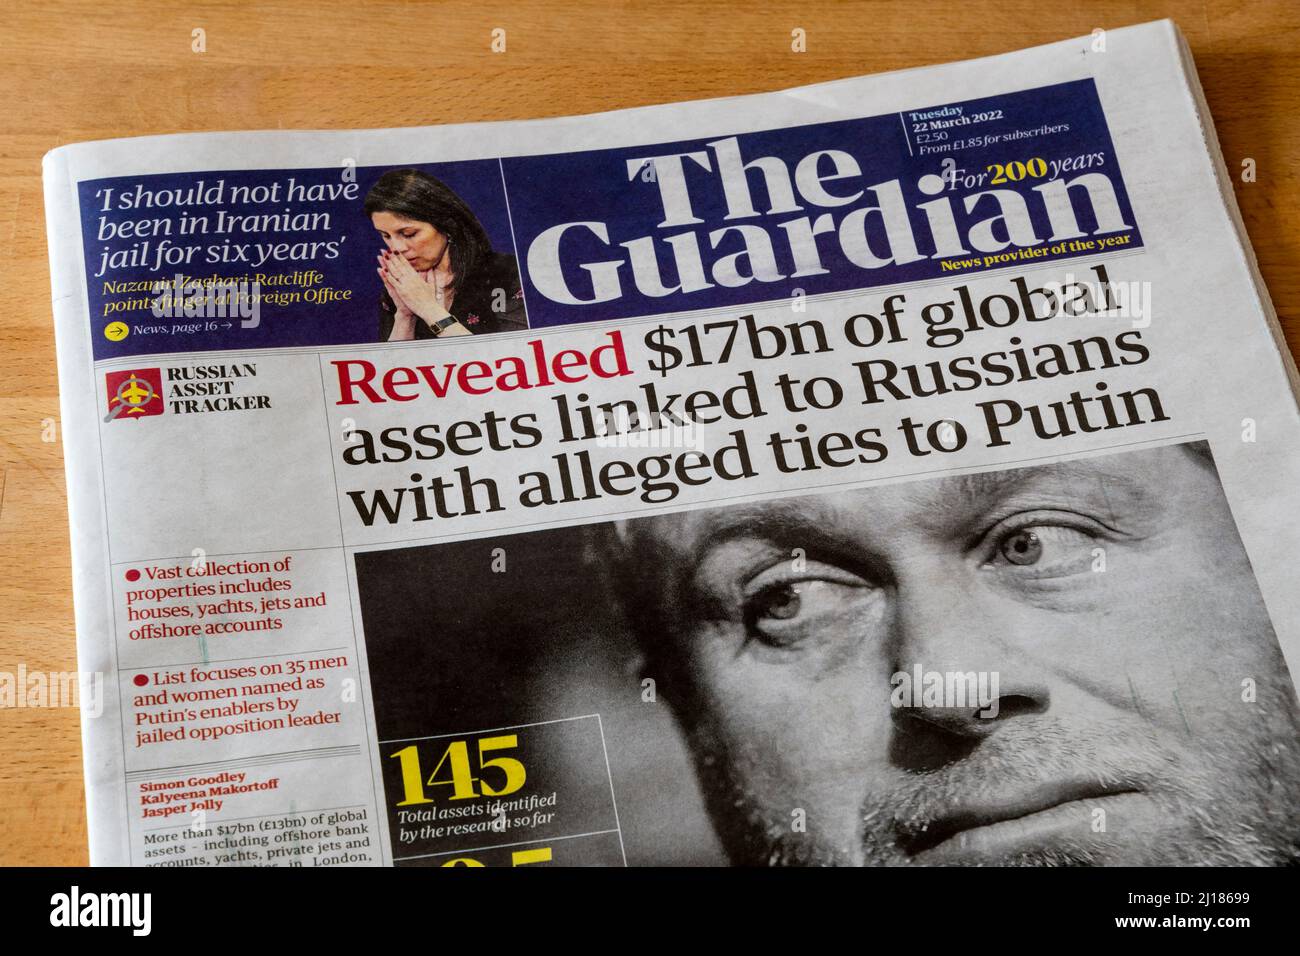 Am 22. März 2022 lautet die Überschrift auf Guardian: „Enthüllte 17bn US-Dollar an globalen Vermögenswerten, die mit Russen in Verbindung stehen, die angeblich mit Putin verbunden sind“. Stockfoto